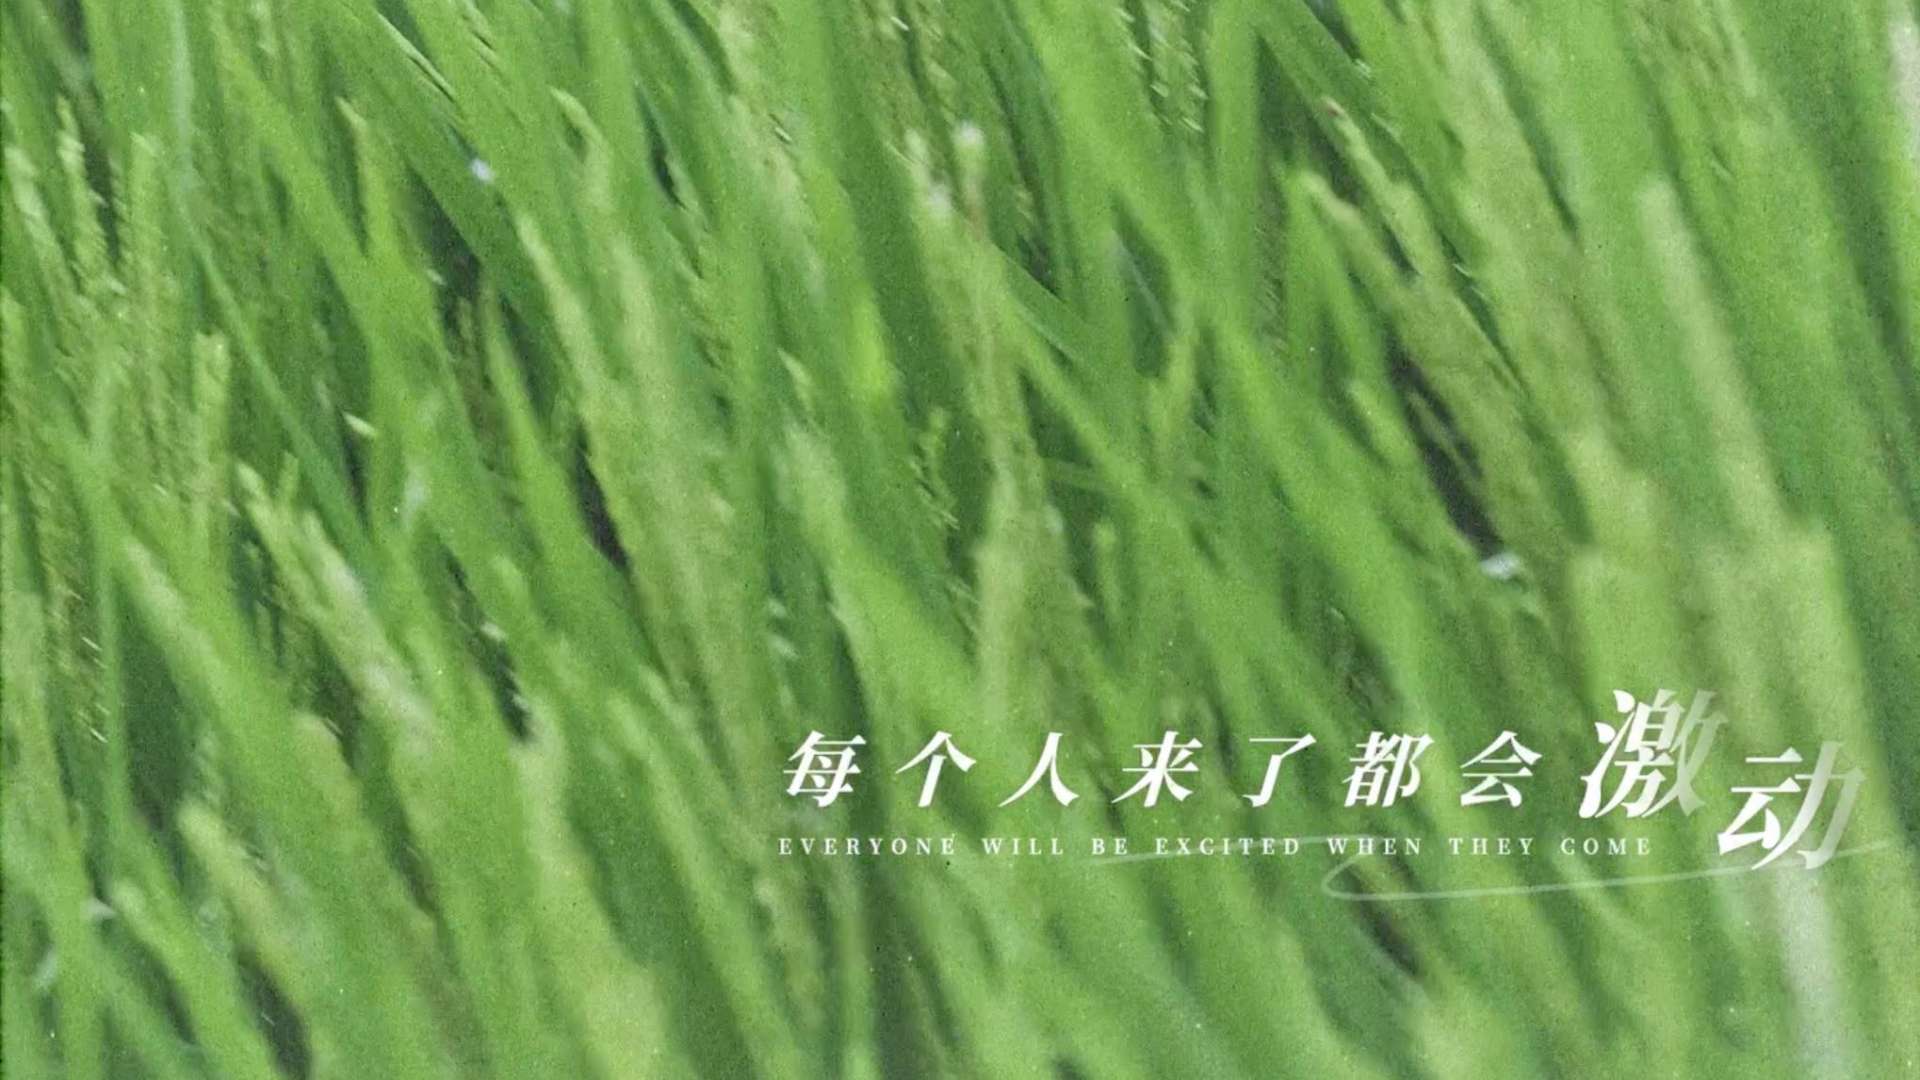 东北小县城的文旅宣传片《山水灵动魅力鸡东》鸡东县文旅宣传片